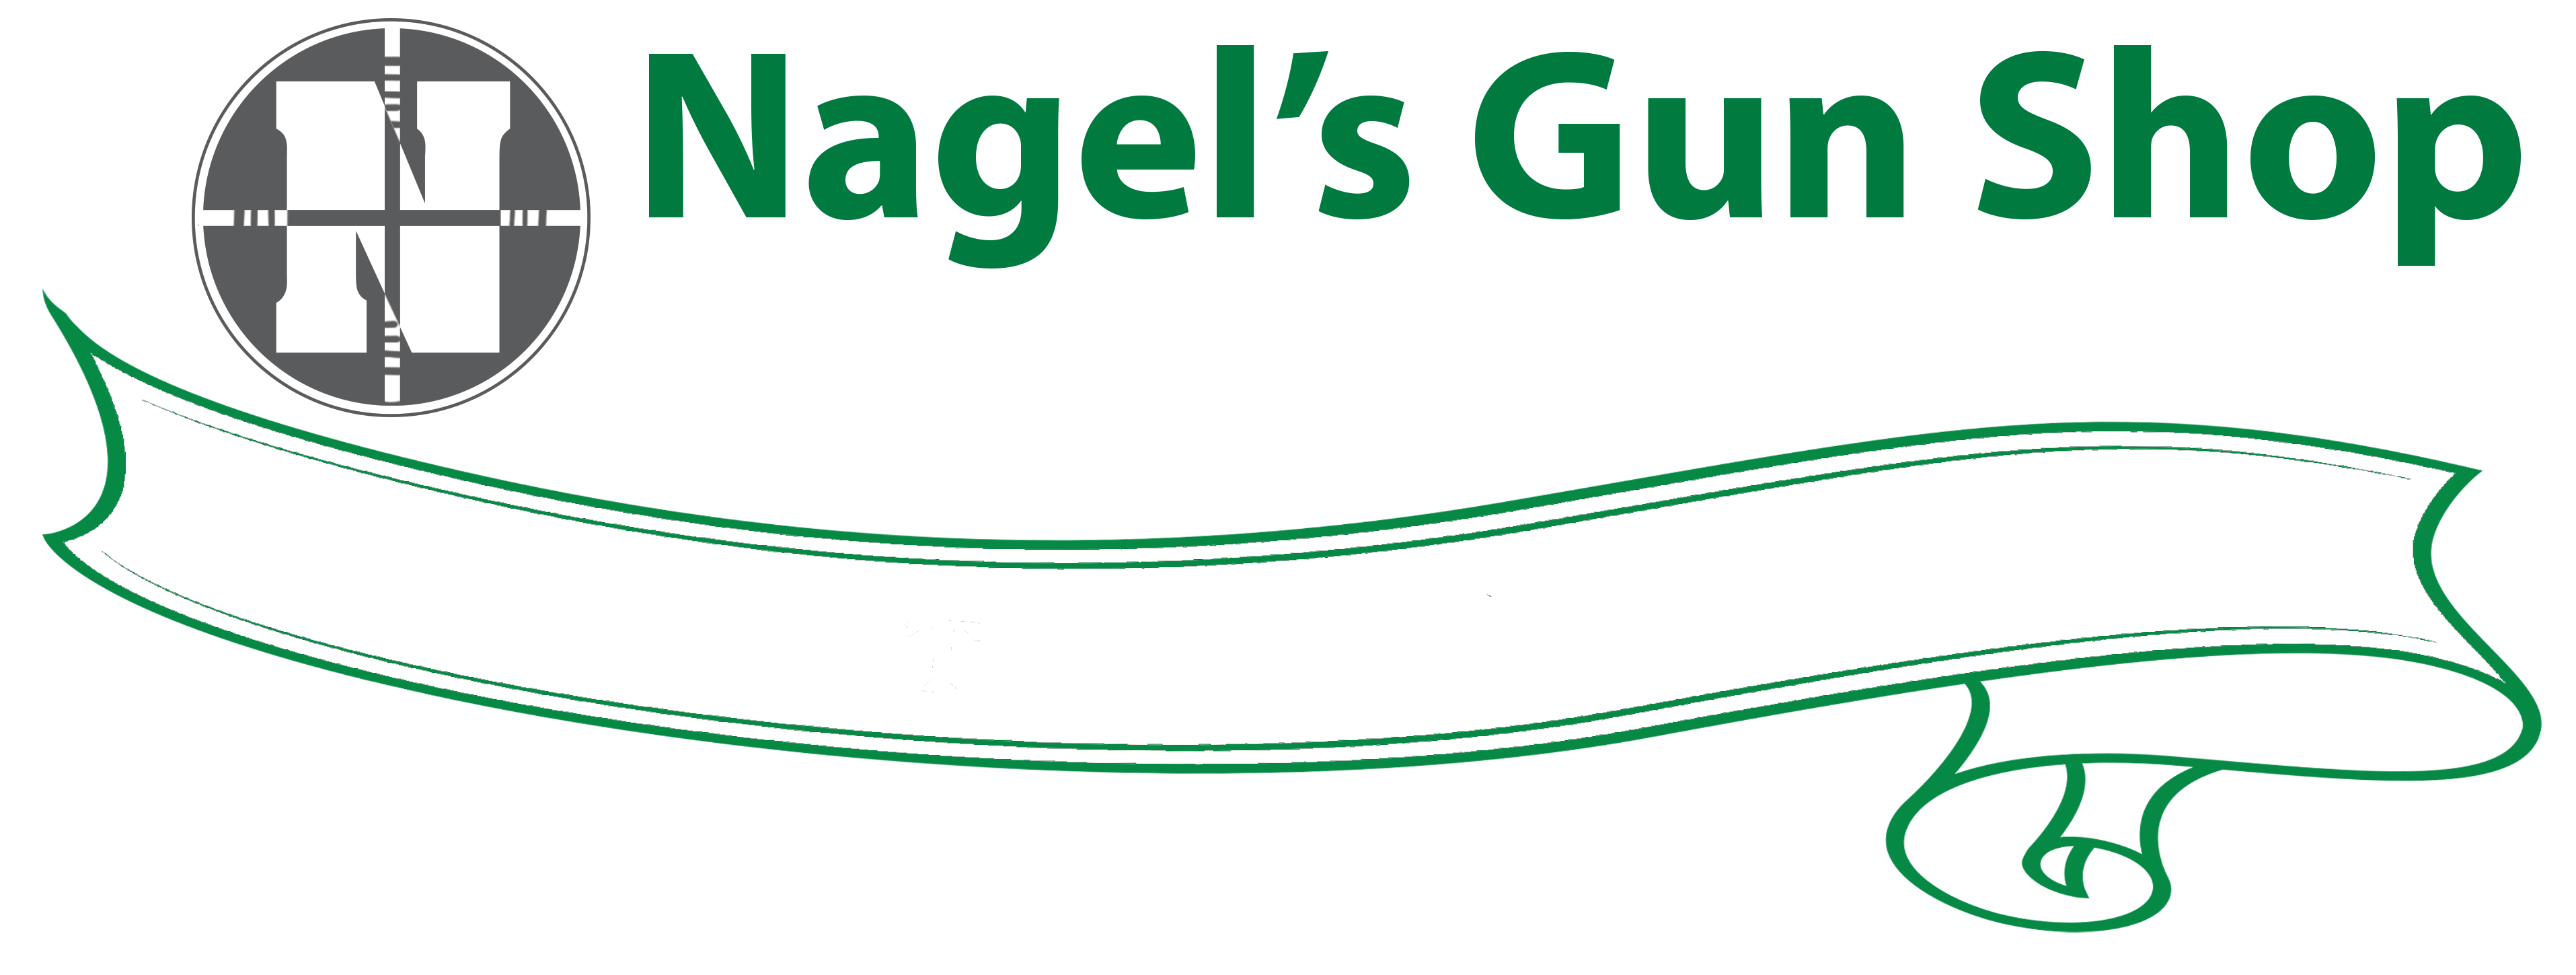 Nagel's Gun Shop | Since 1942